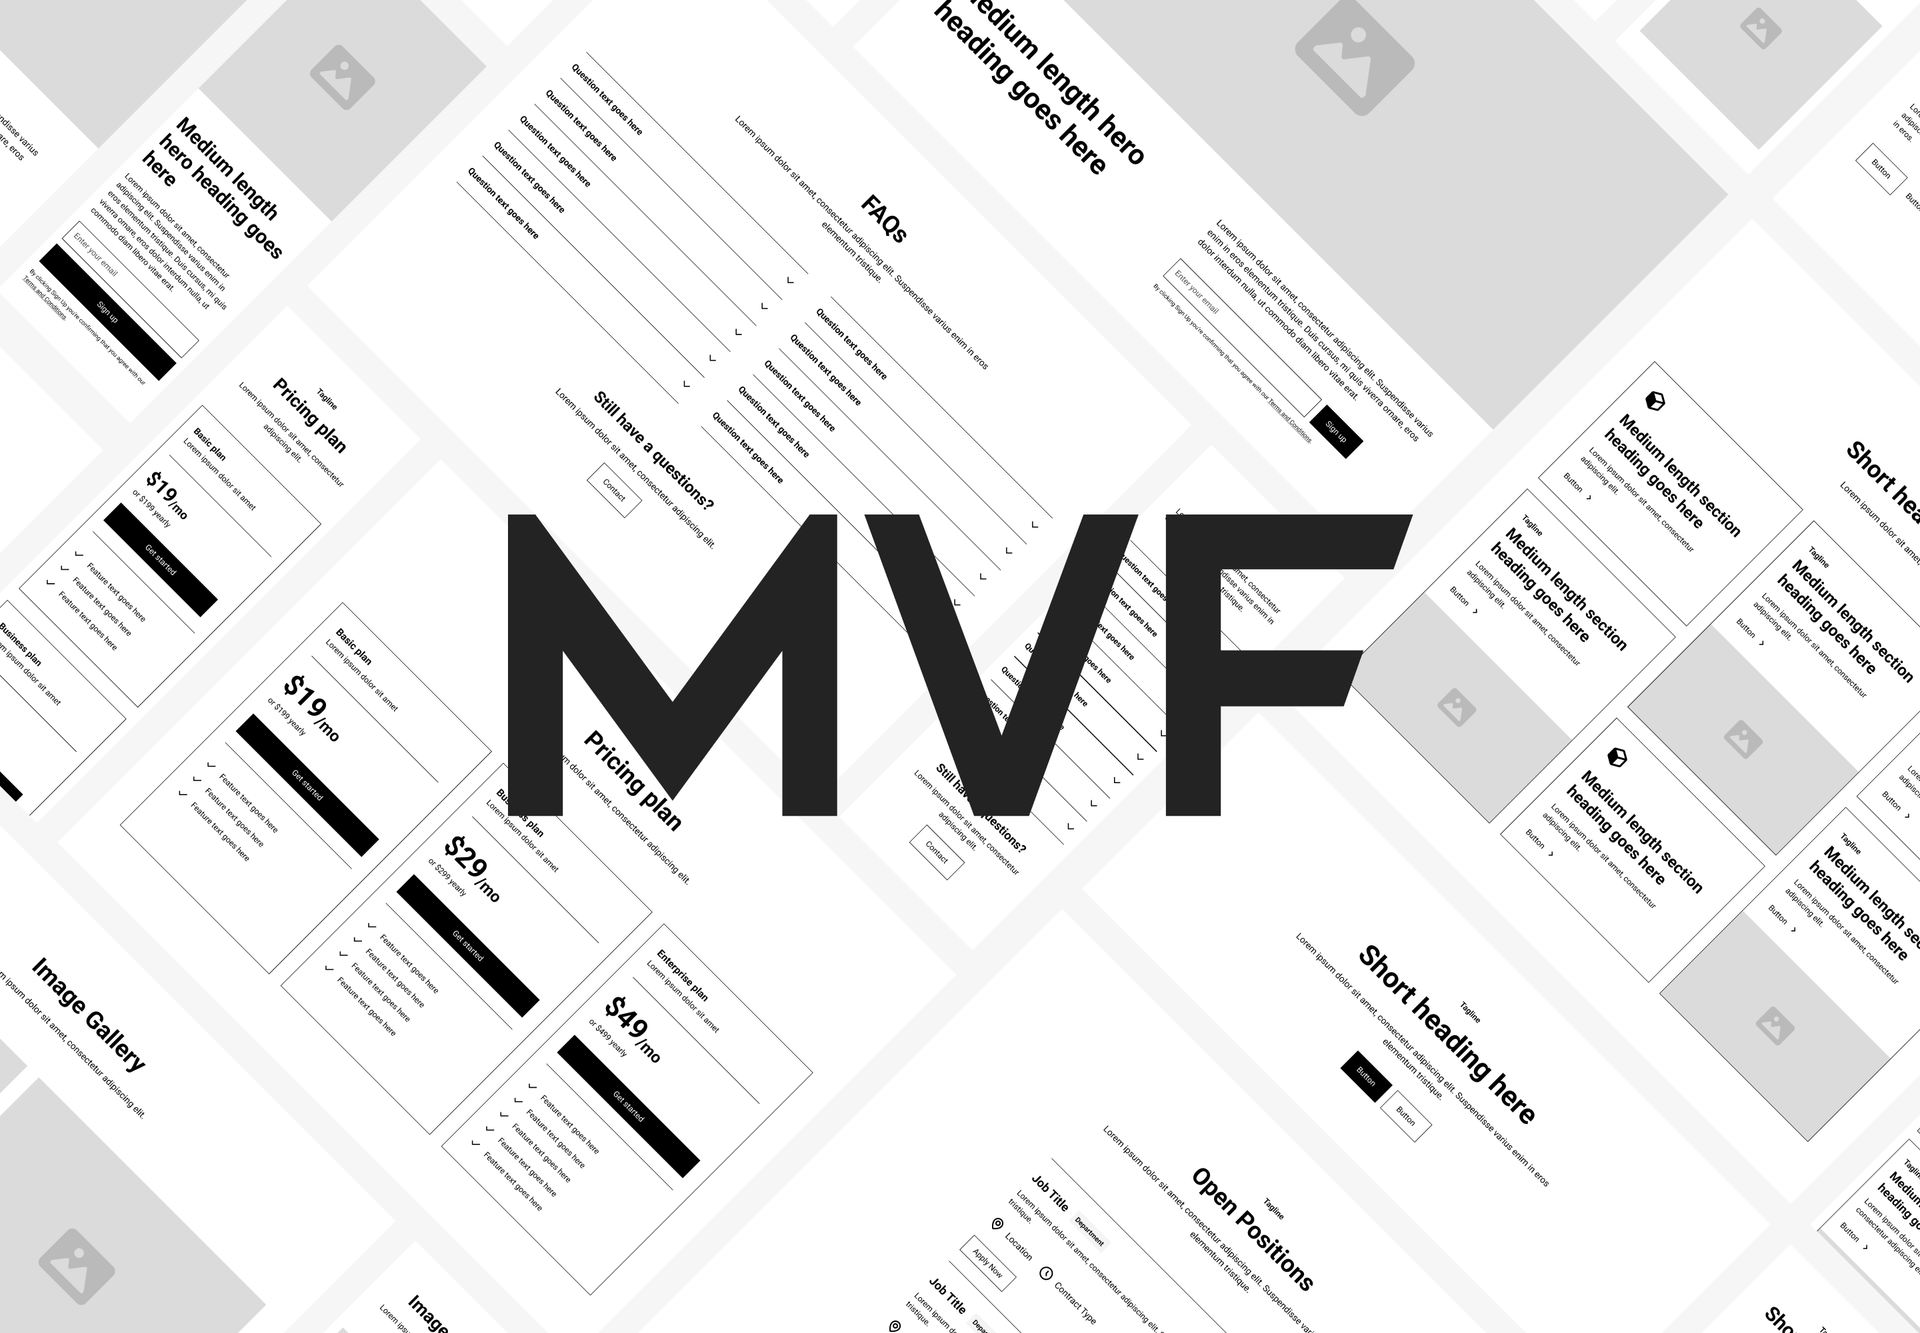 MVF Global